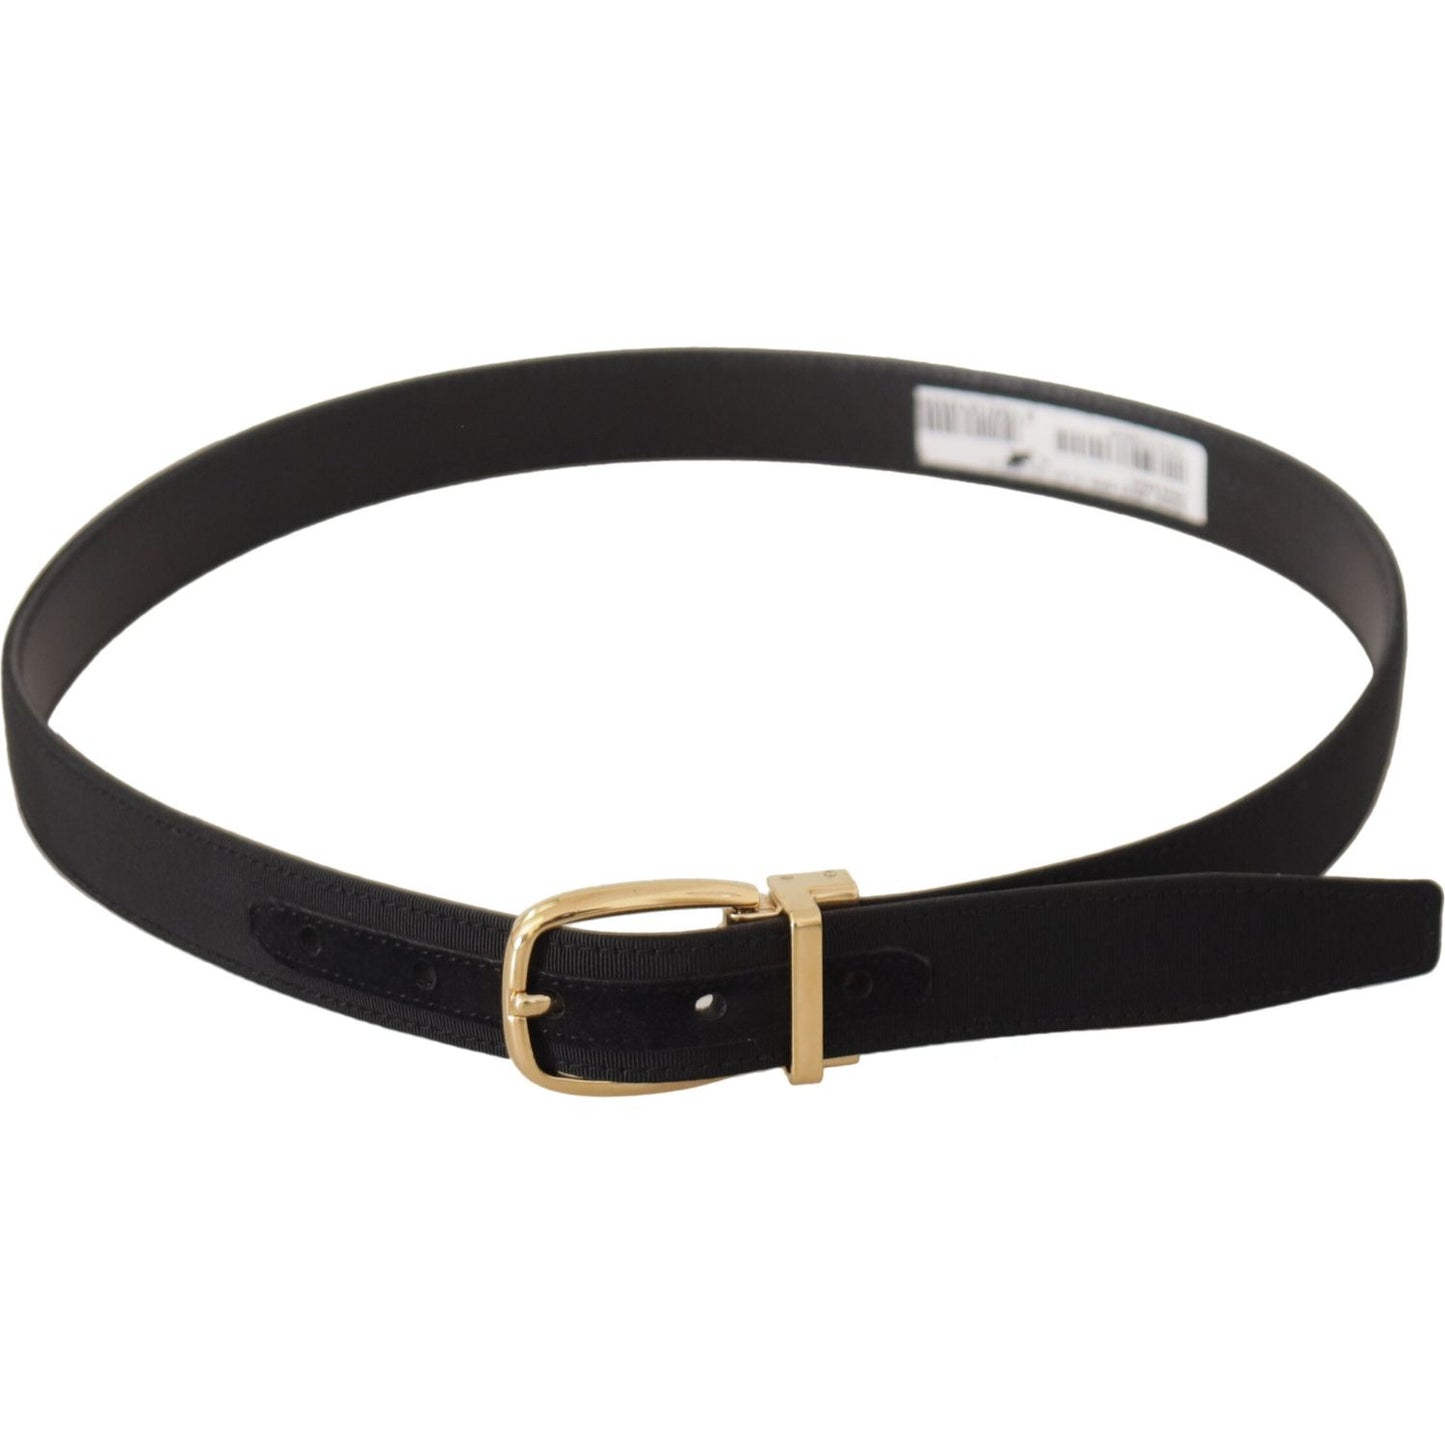 Dolce & Gabbana Elegant Black Leather Belt black-canvas-leather-gold-metal-buckle-belt IMG_0514-scaled-c25eaf65-e5e.jpg